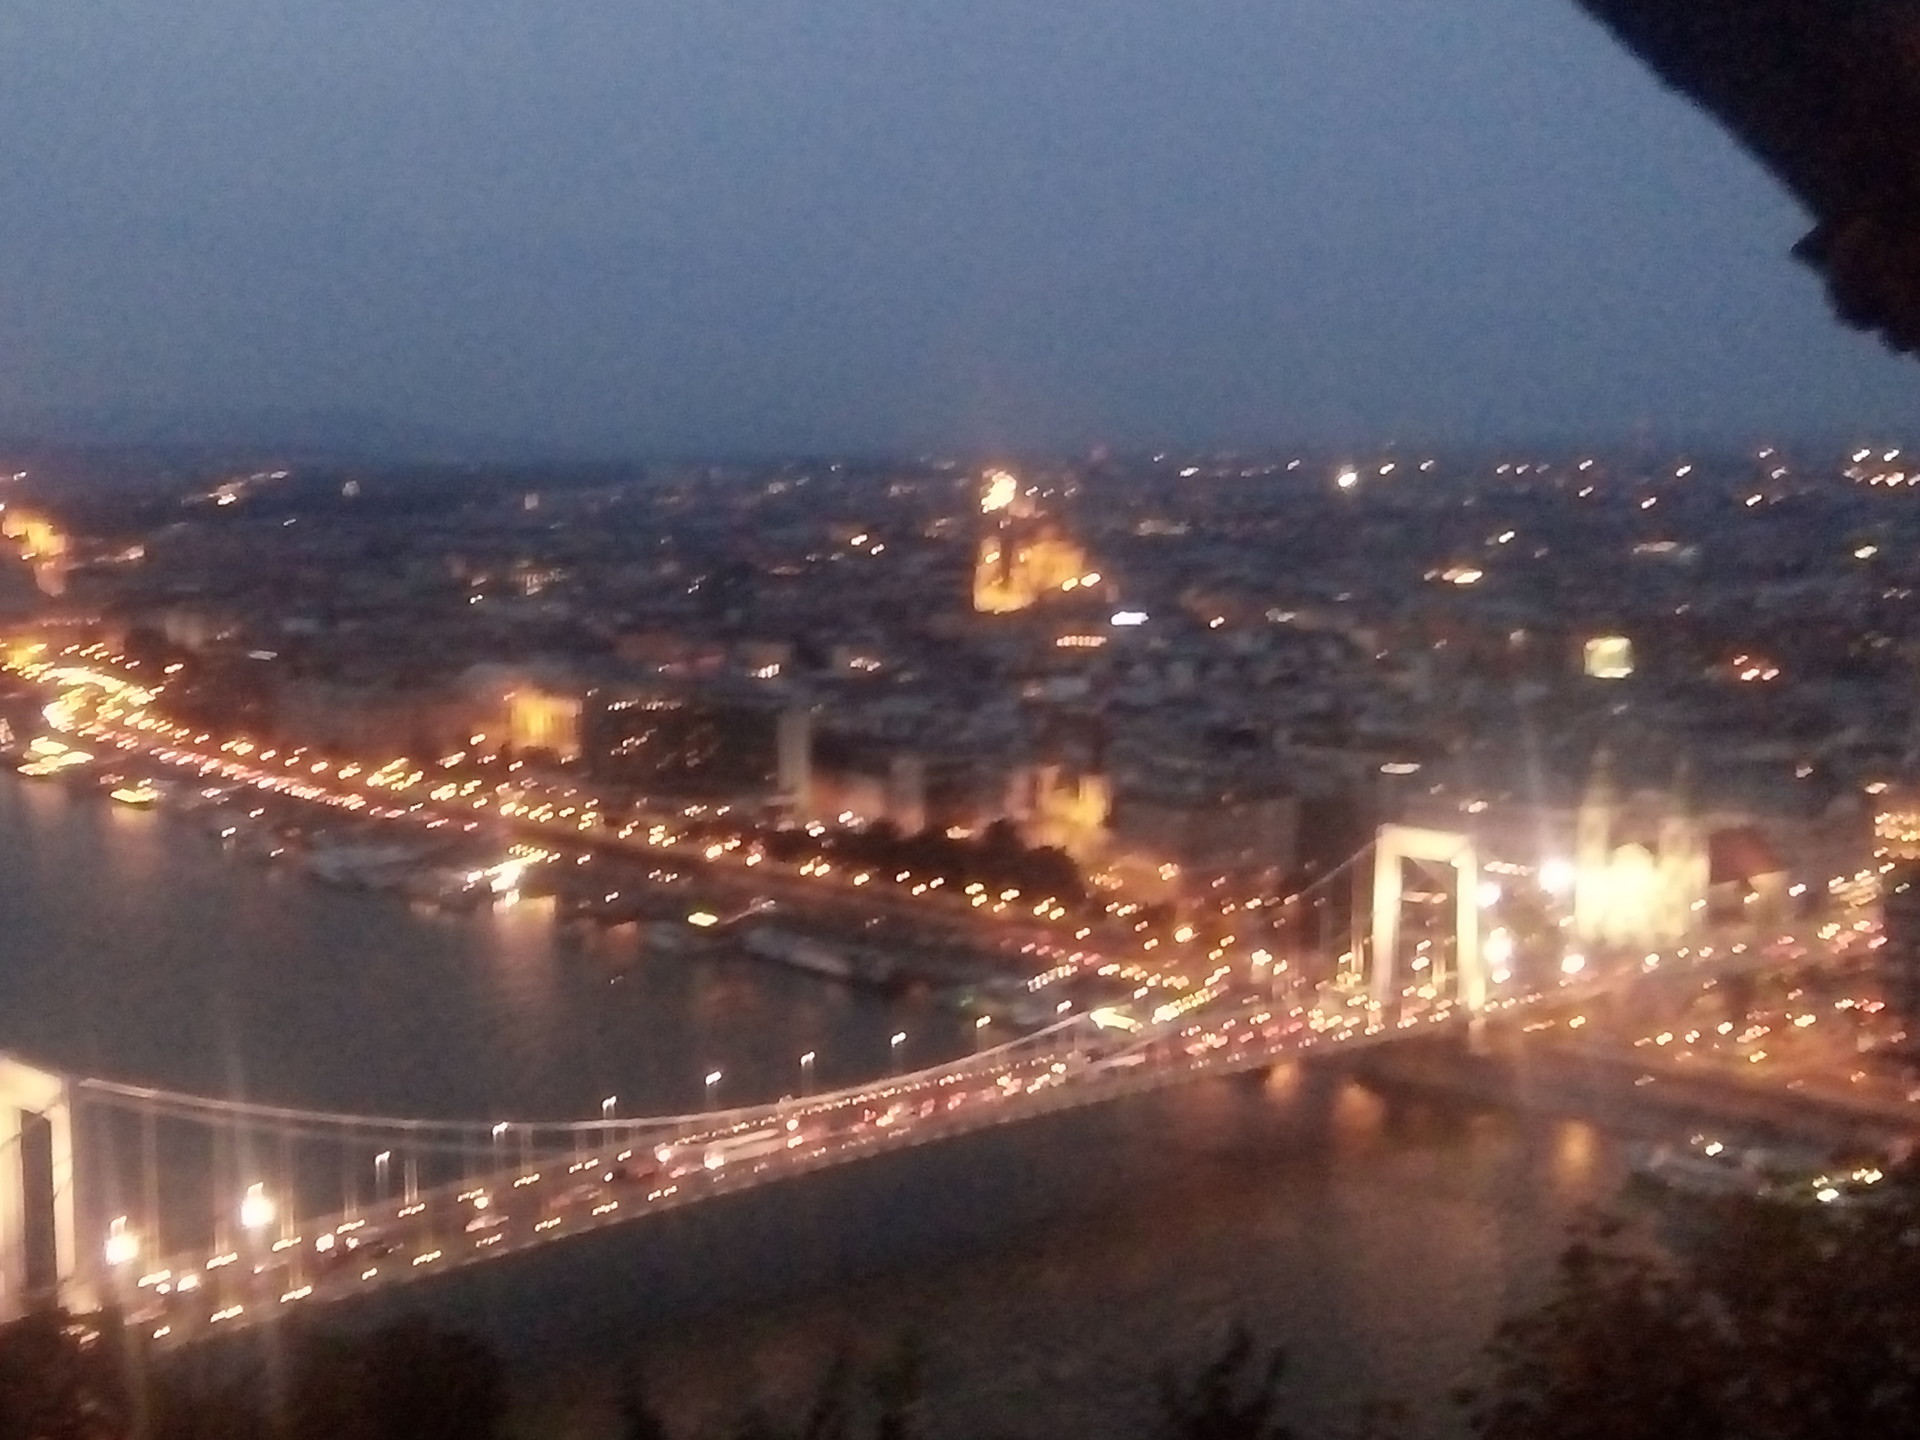 budapest-night-citadella-ebcc9abcbe8e7f8